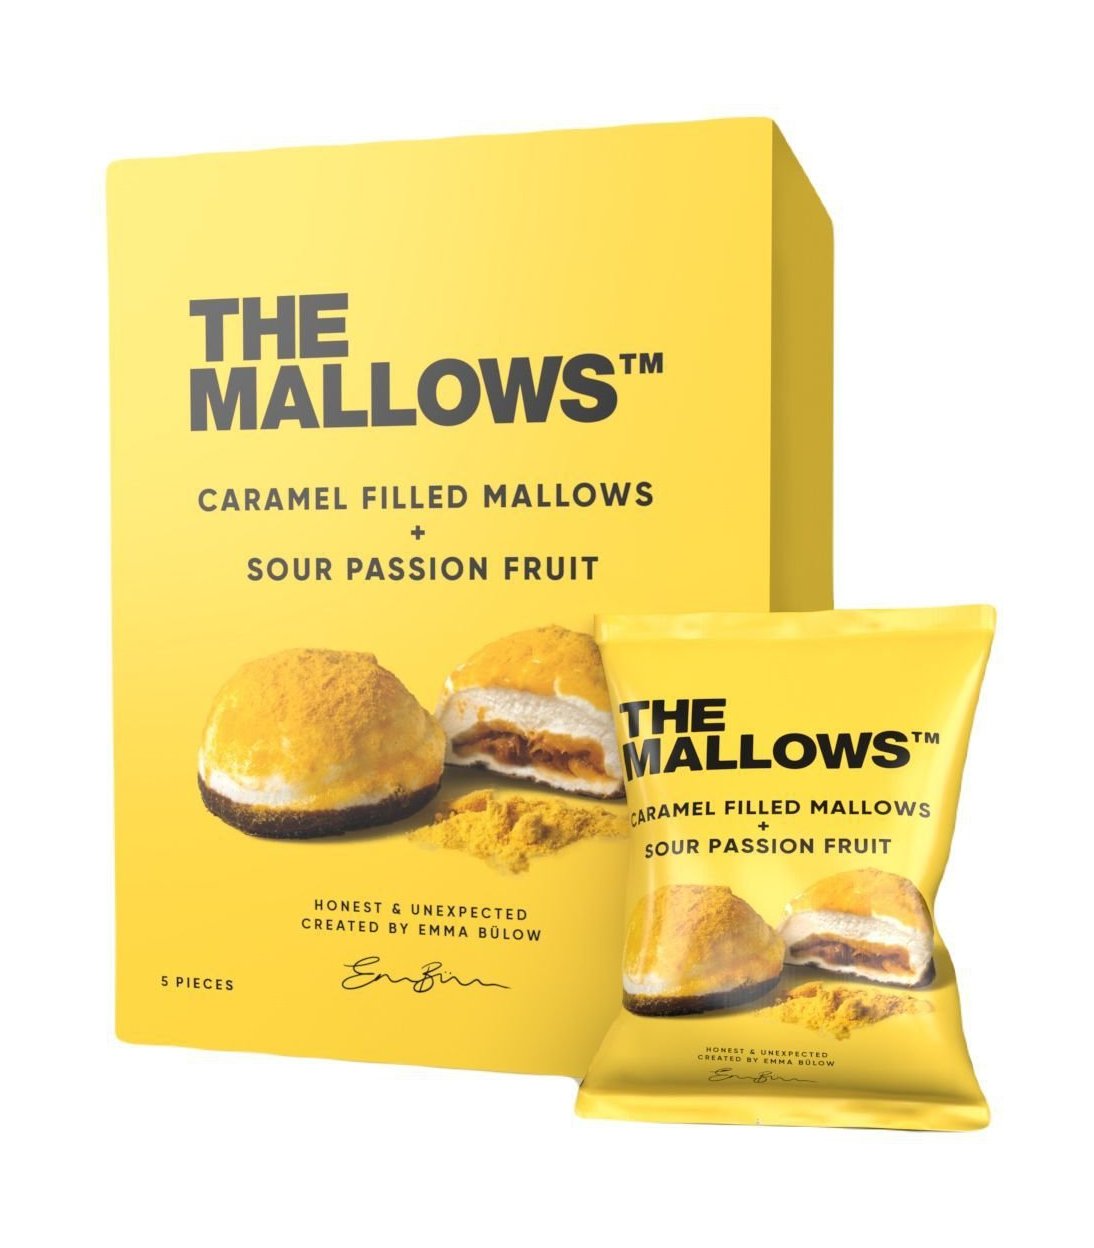 The Mallows Marshmallows z karmelowymi wypełniającymi kwaśne owoc